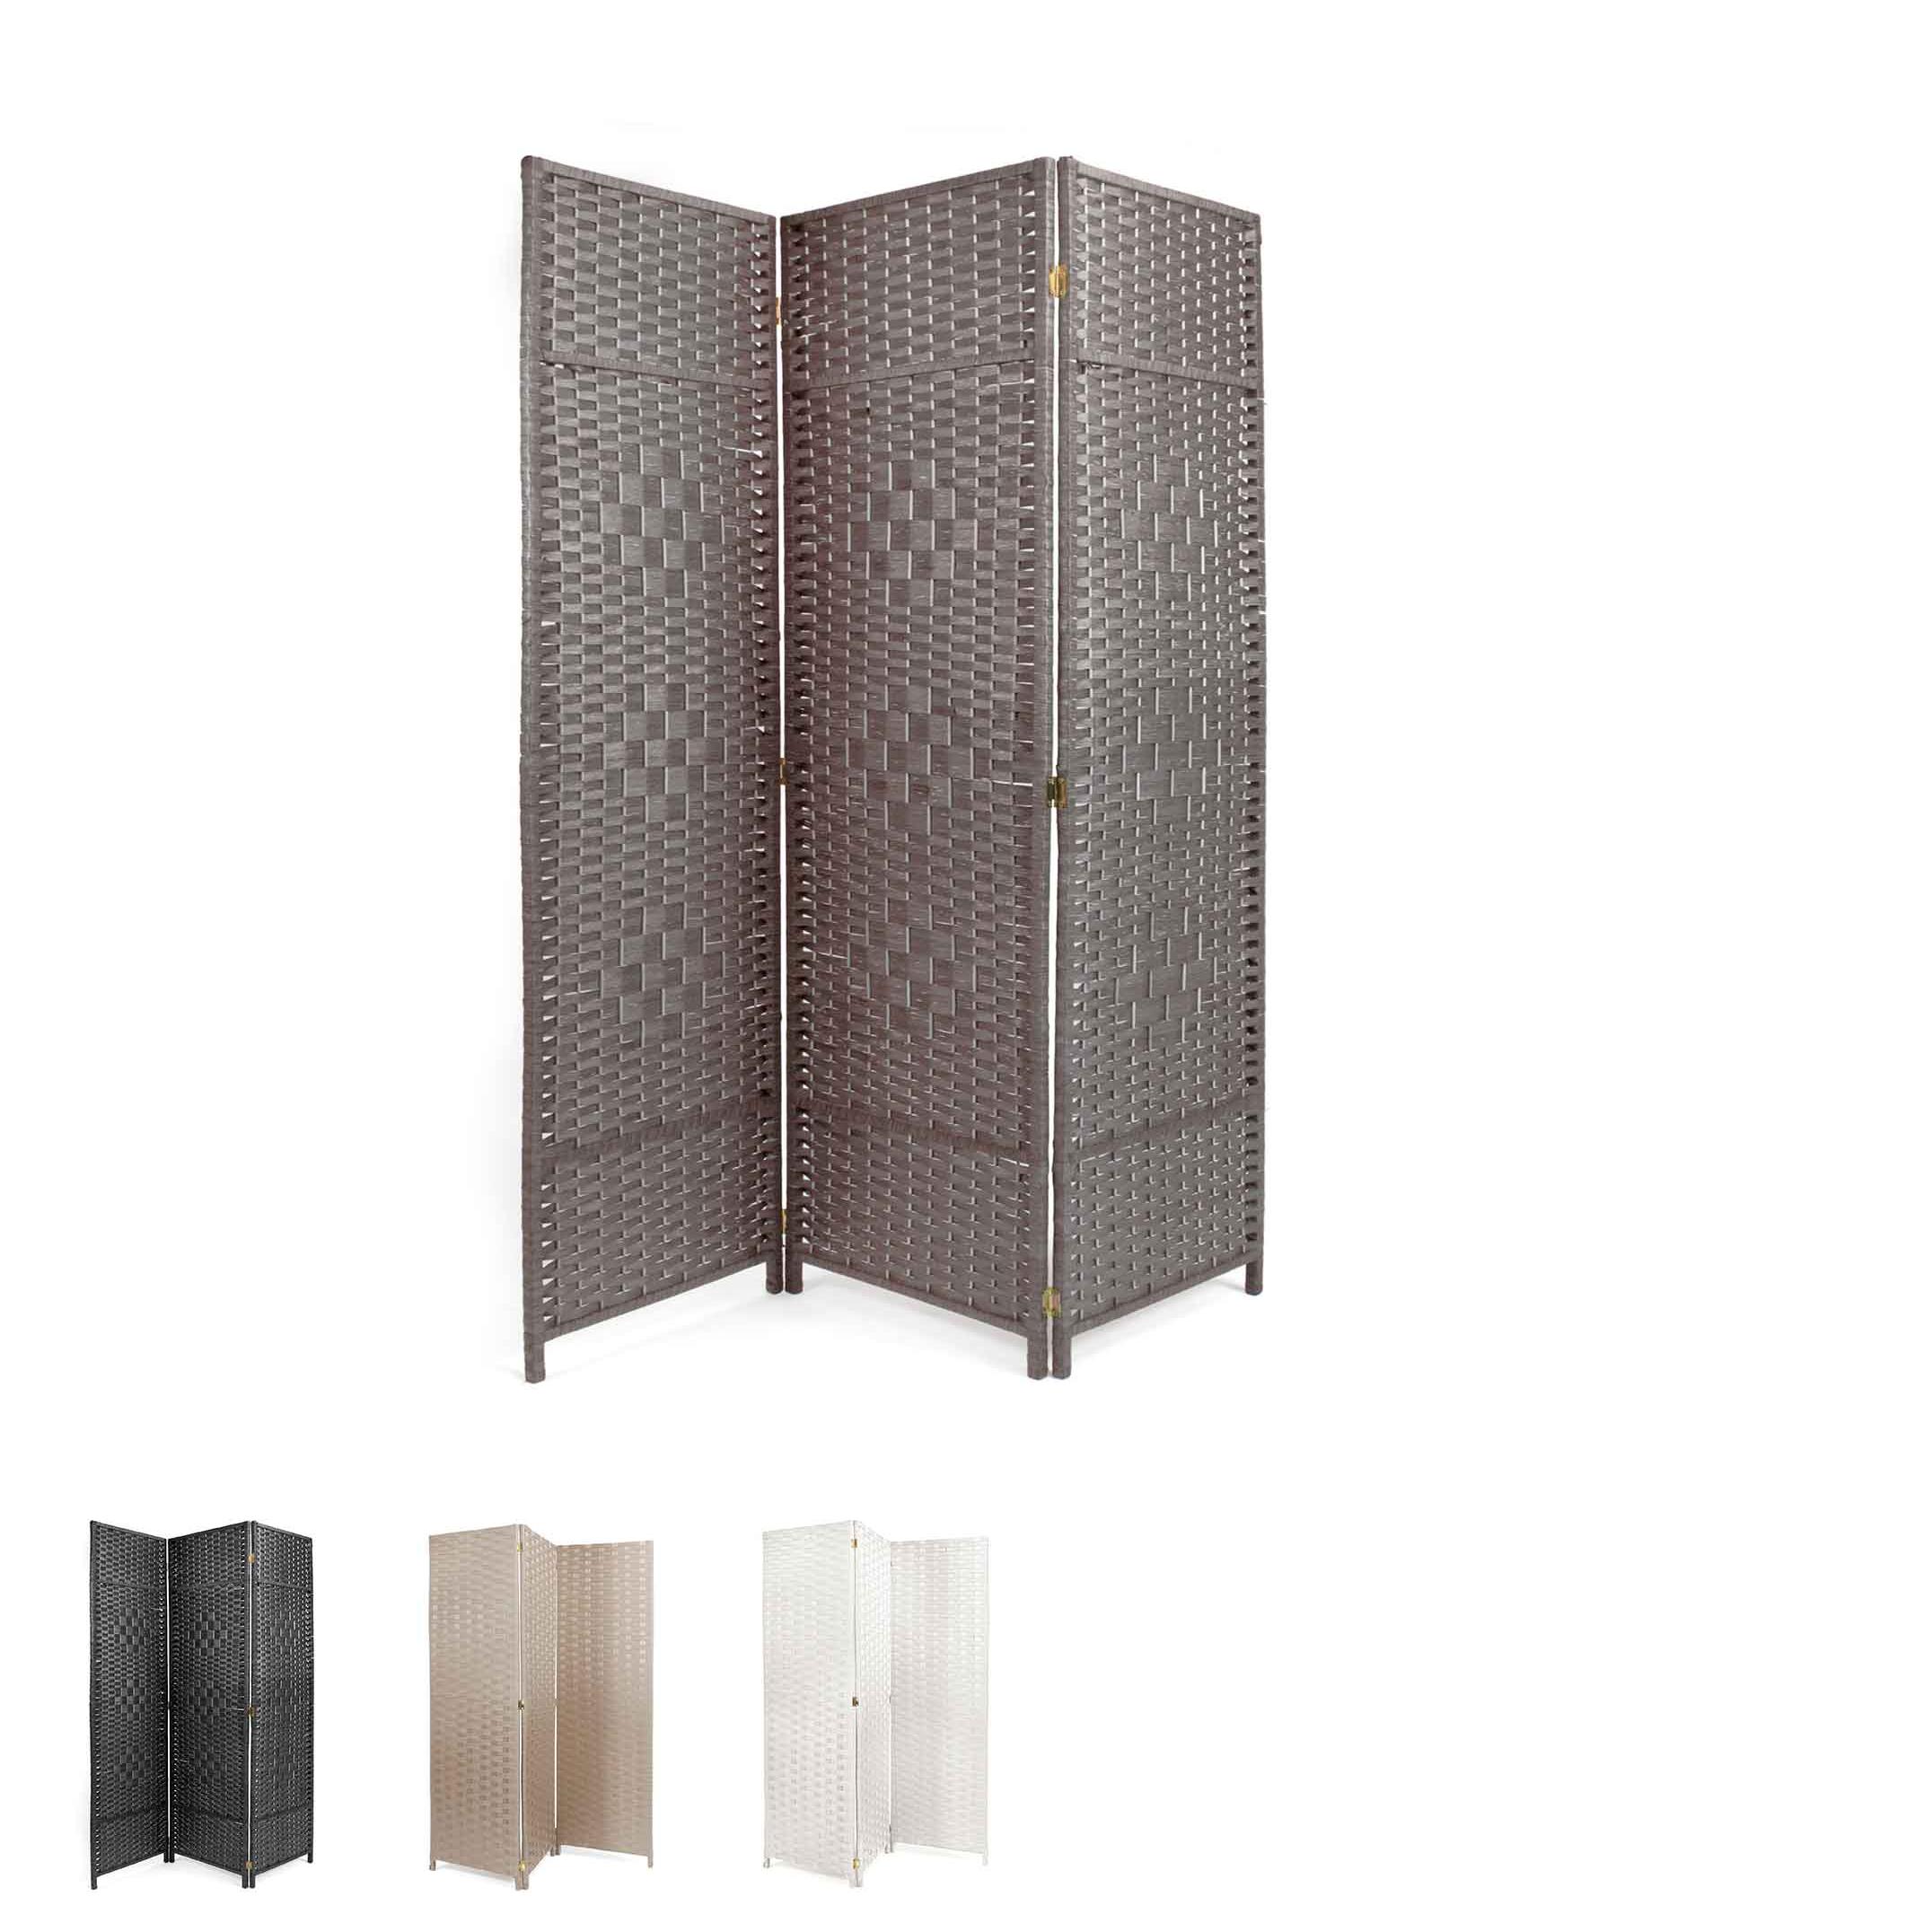 The Secret Home - Biombo Plegable 3 Paneles - 180 cm x 135 cm - Separador  de Ambientes - Decoración Ideal para Salón, Dormitorio